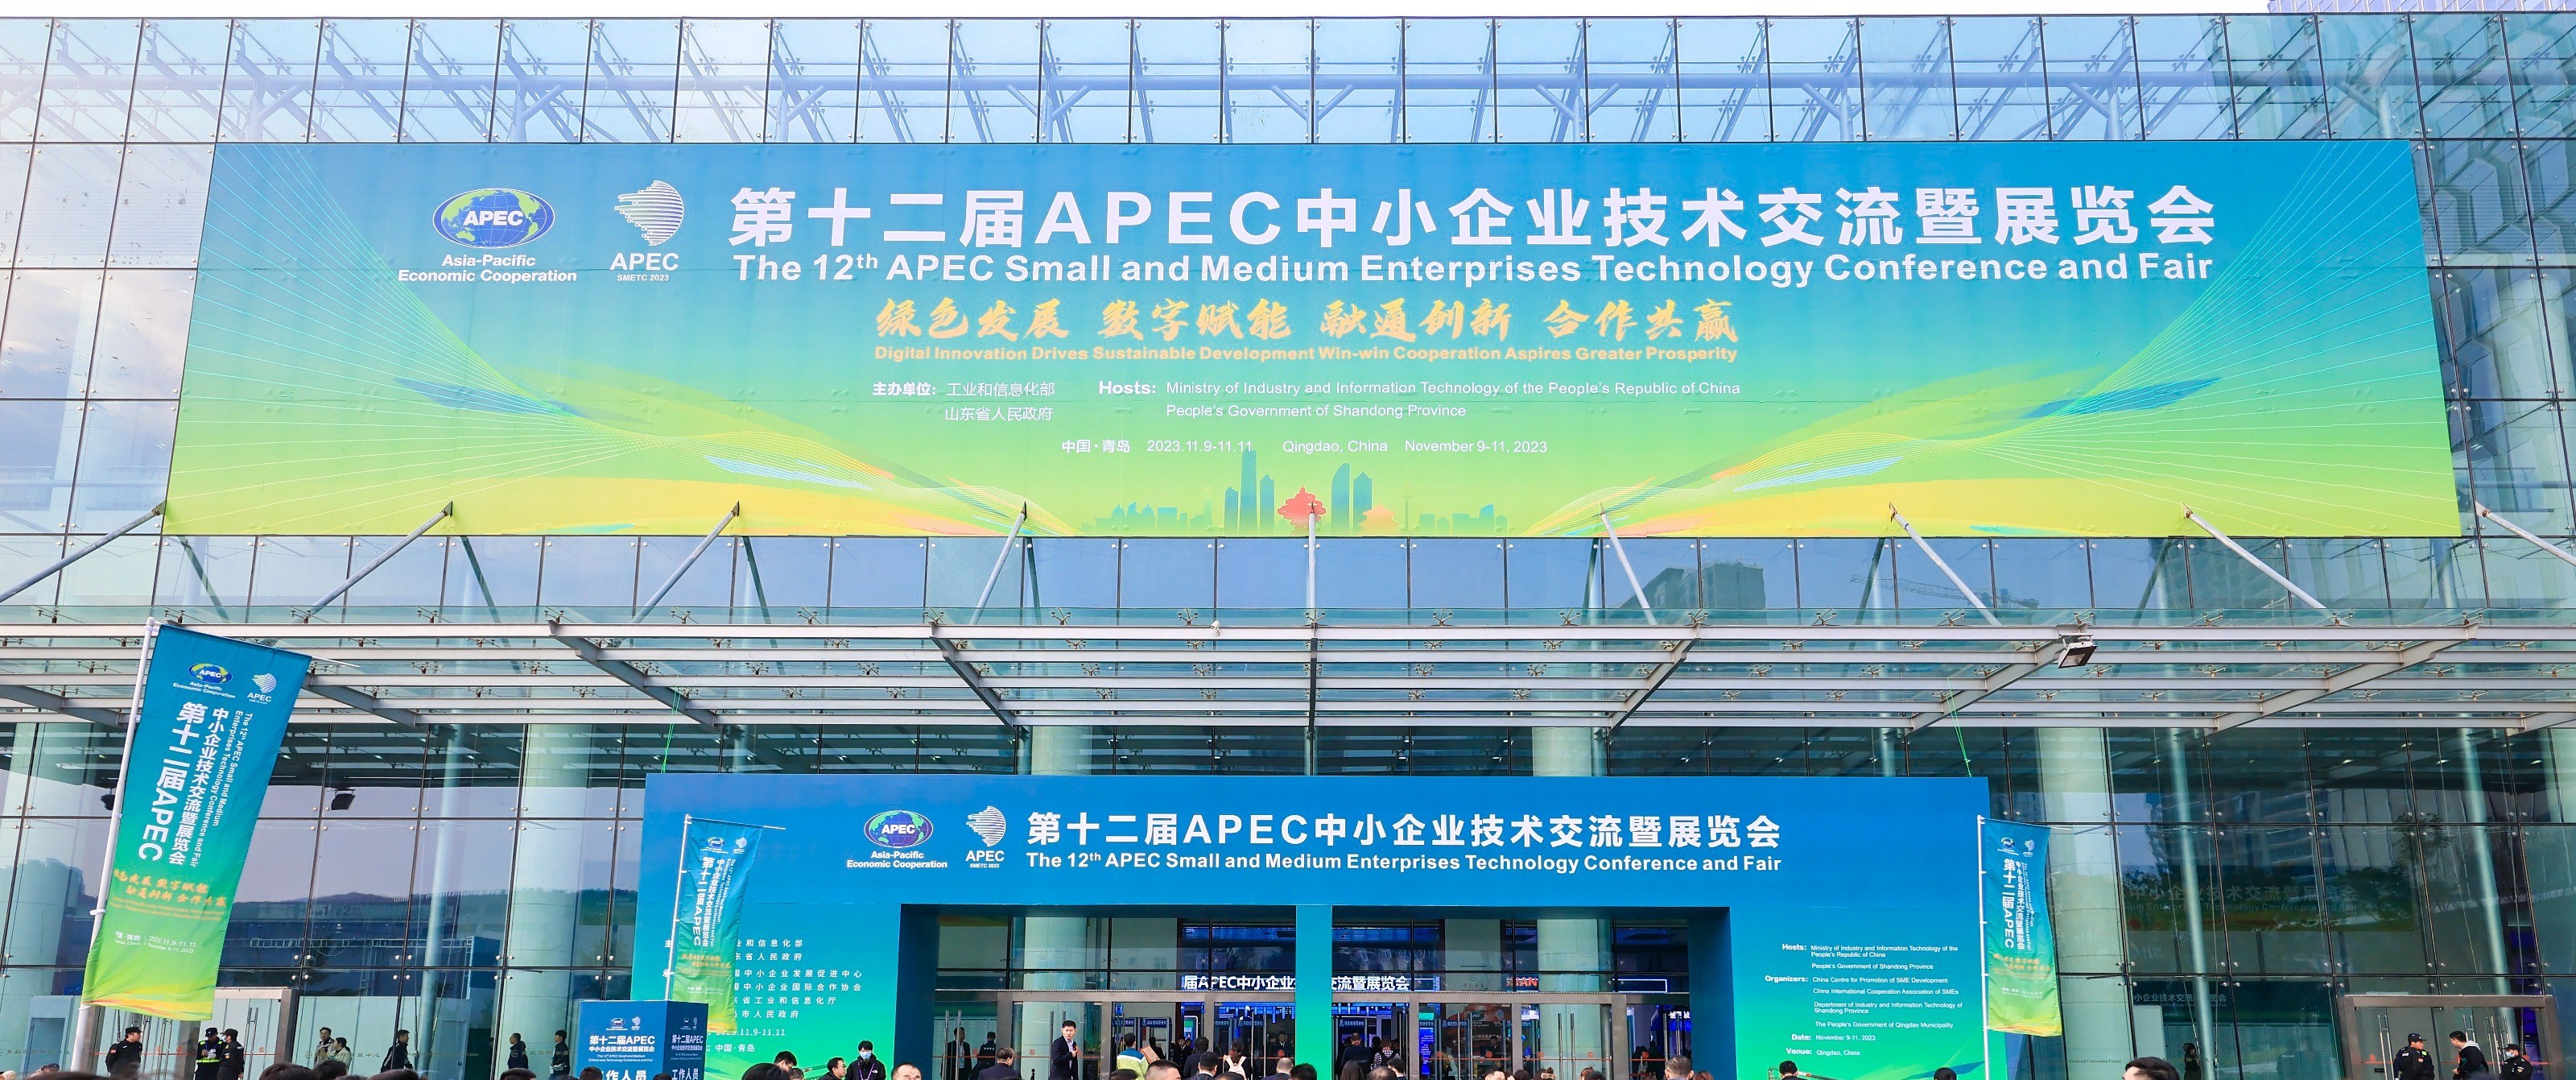 向世界展示中国“智”造！16877太阳集团主页亮相第十二届APEC中小企业技术交流暨展览会